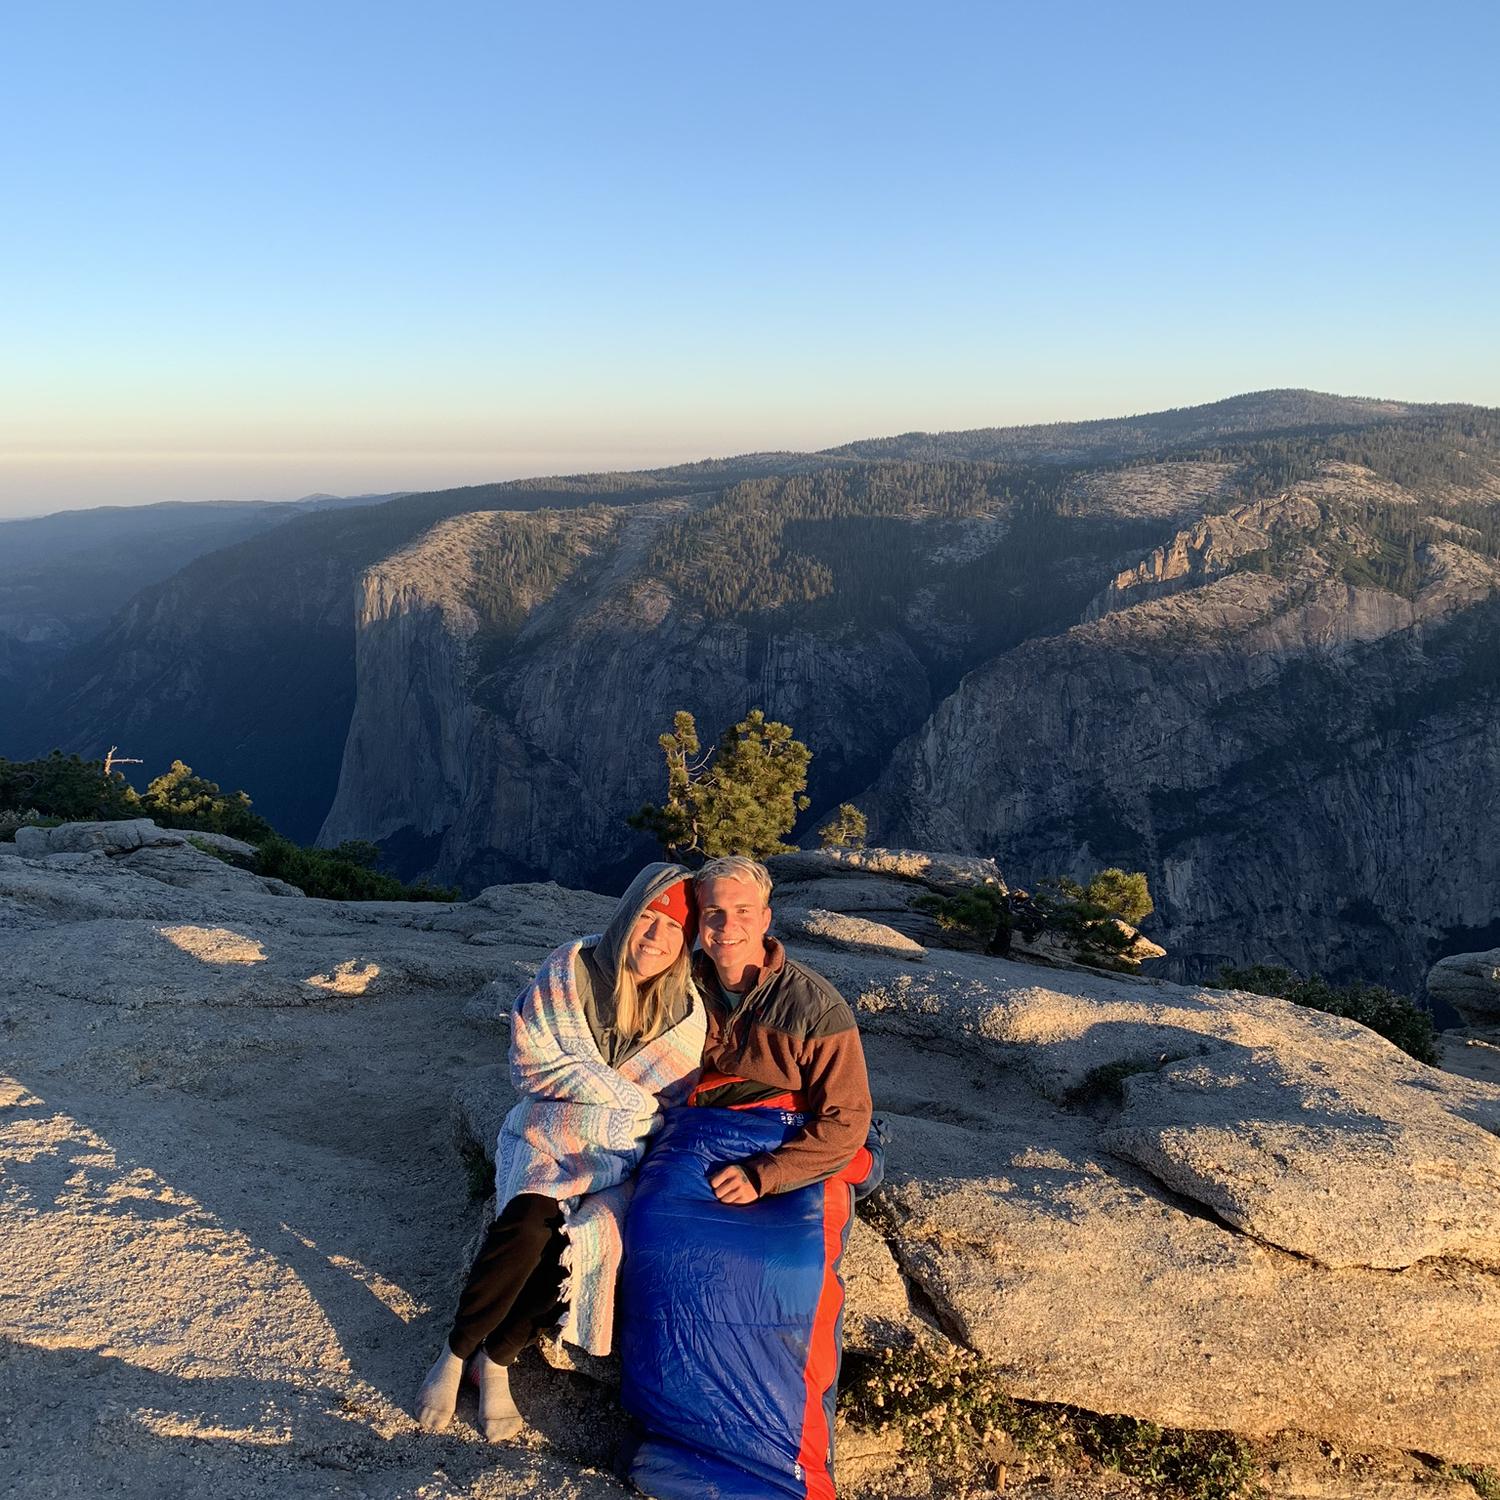 Kyle visits me in Yosemite
7/20/2019